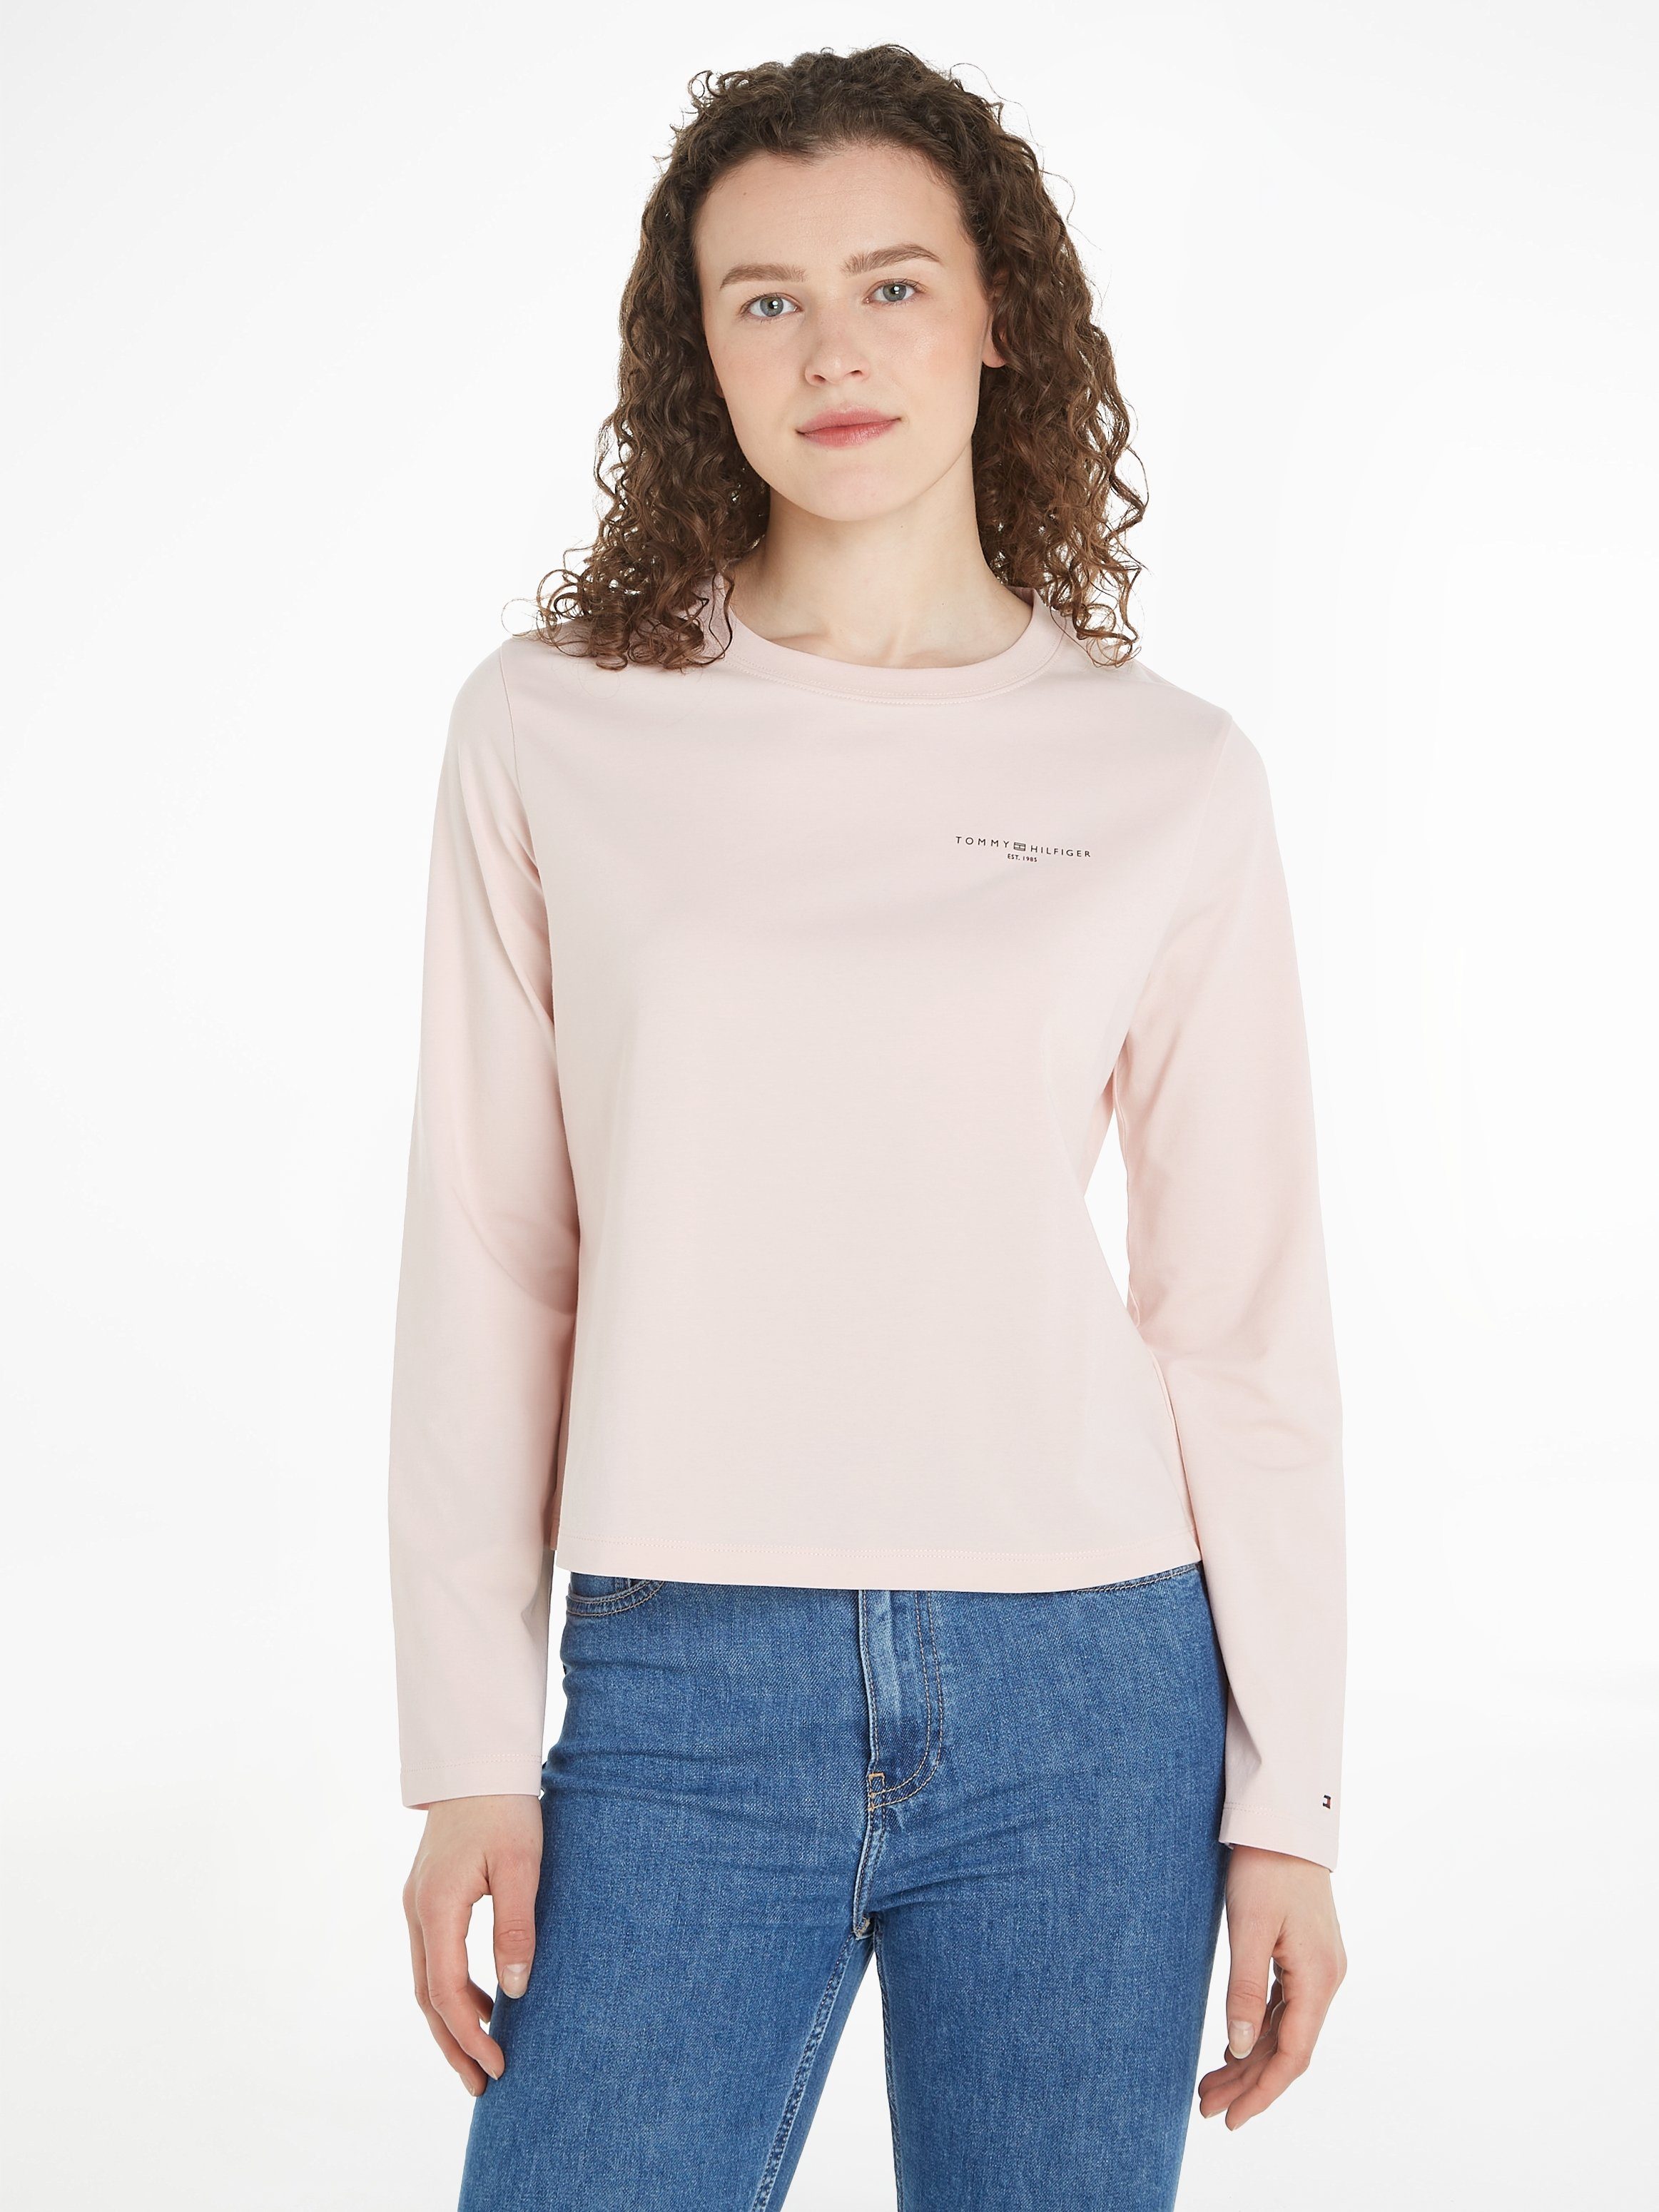 Damen für online OTTO kaufen Tommy Hilfiger Rosa Shirts |